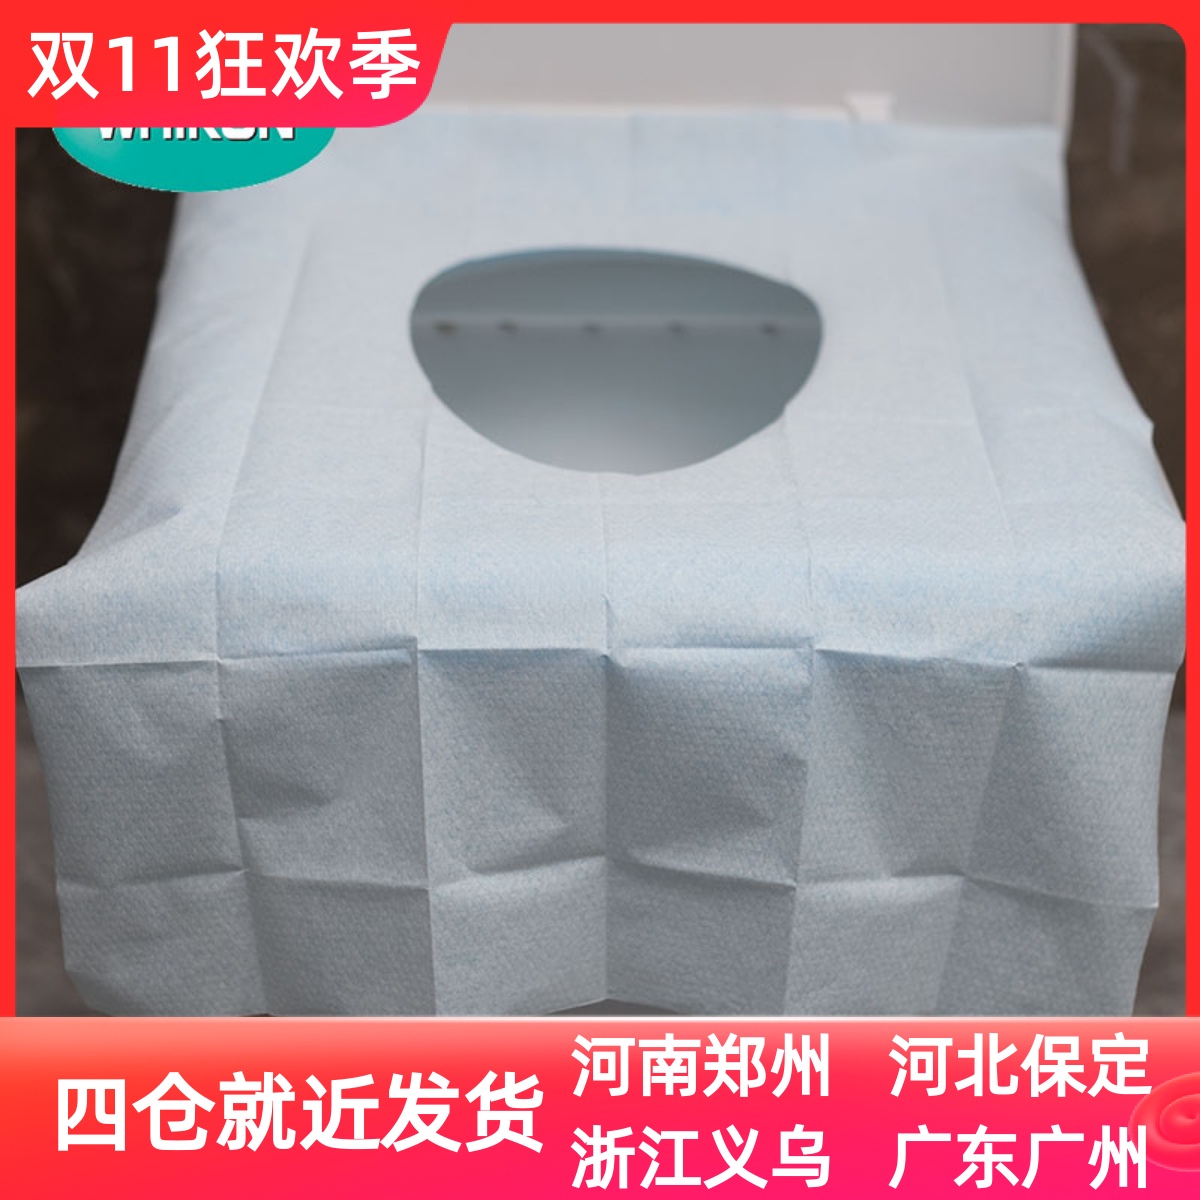 一次性马桶垫旅行粘贴坐便器厕所便携产妇女旅游用品坐便套坐垫纸